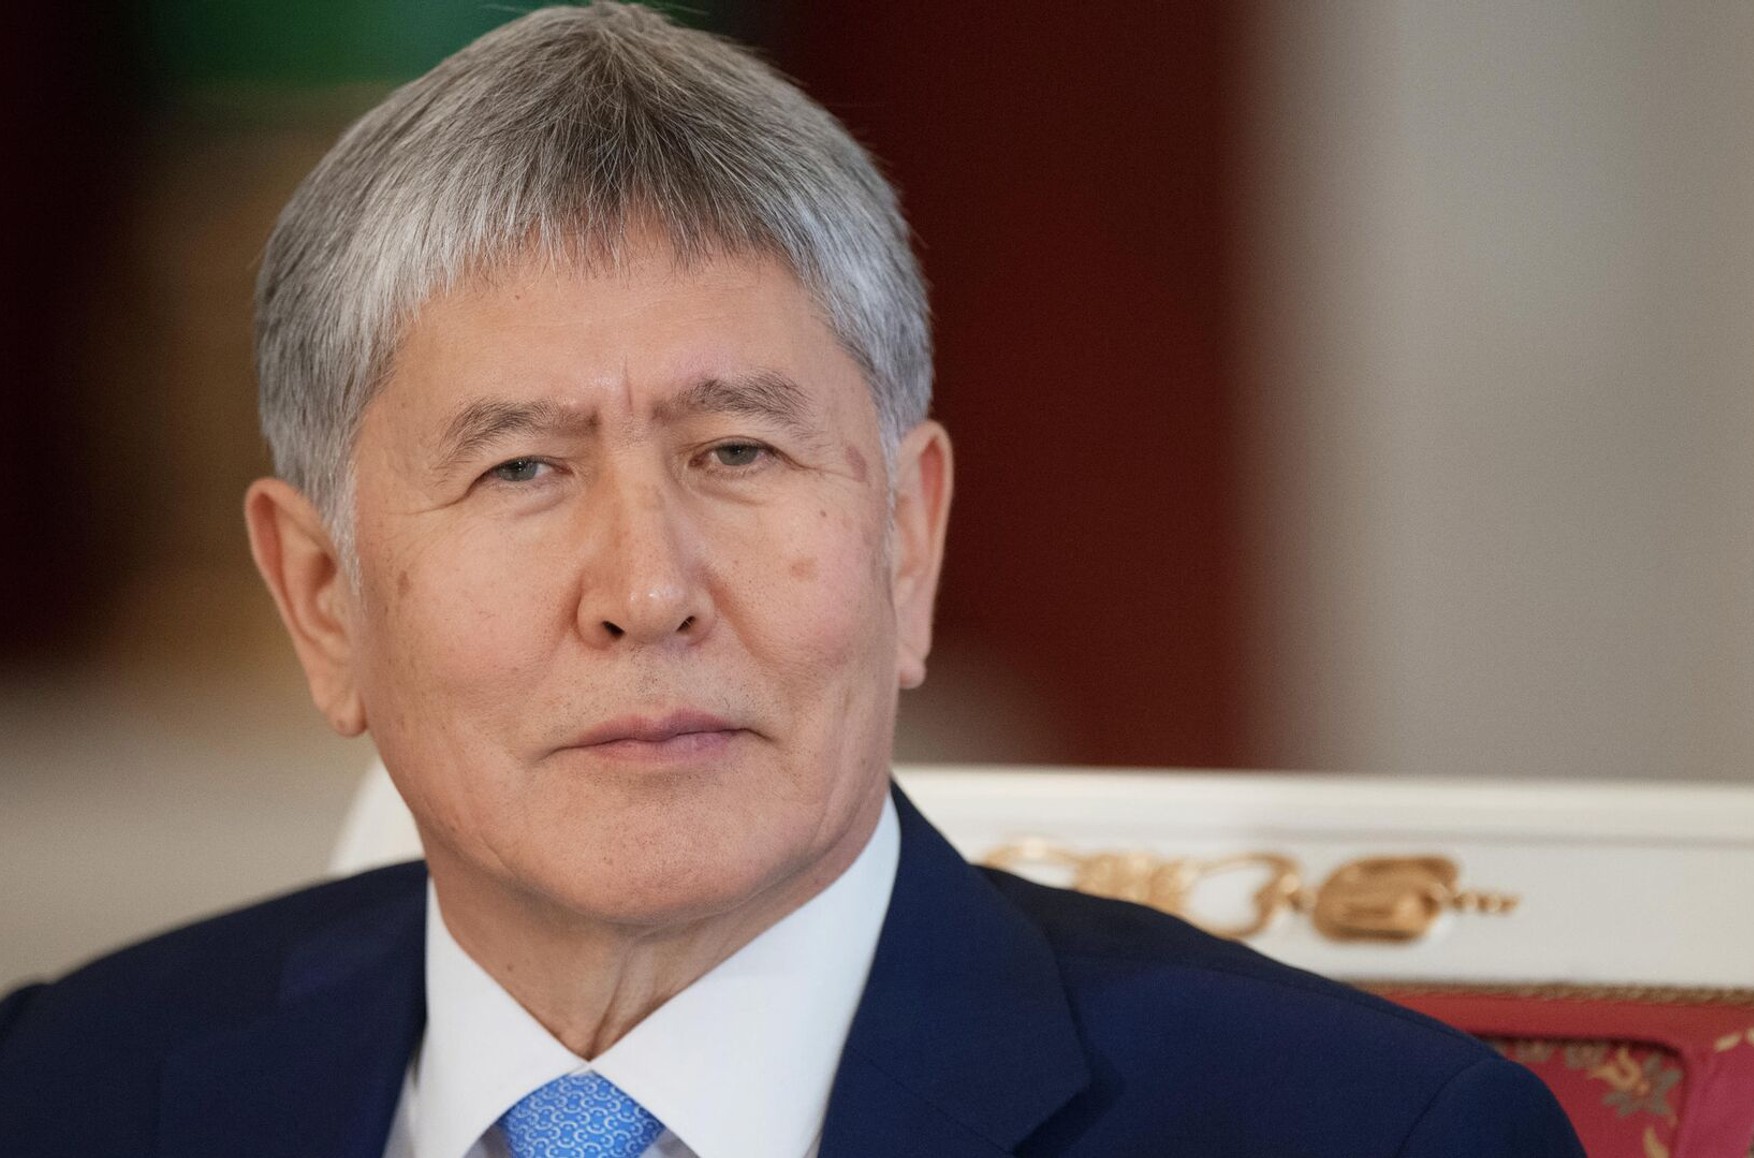 Экс-президента Кыргызстана Атамбаева выпустили из заключения. Он был осужден за незаконное освобождение криминального авторитета